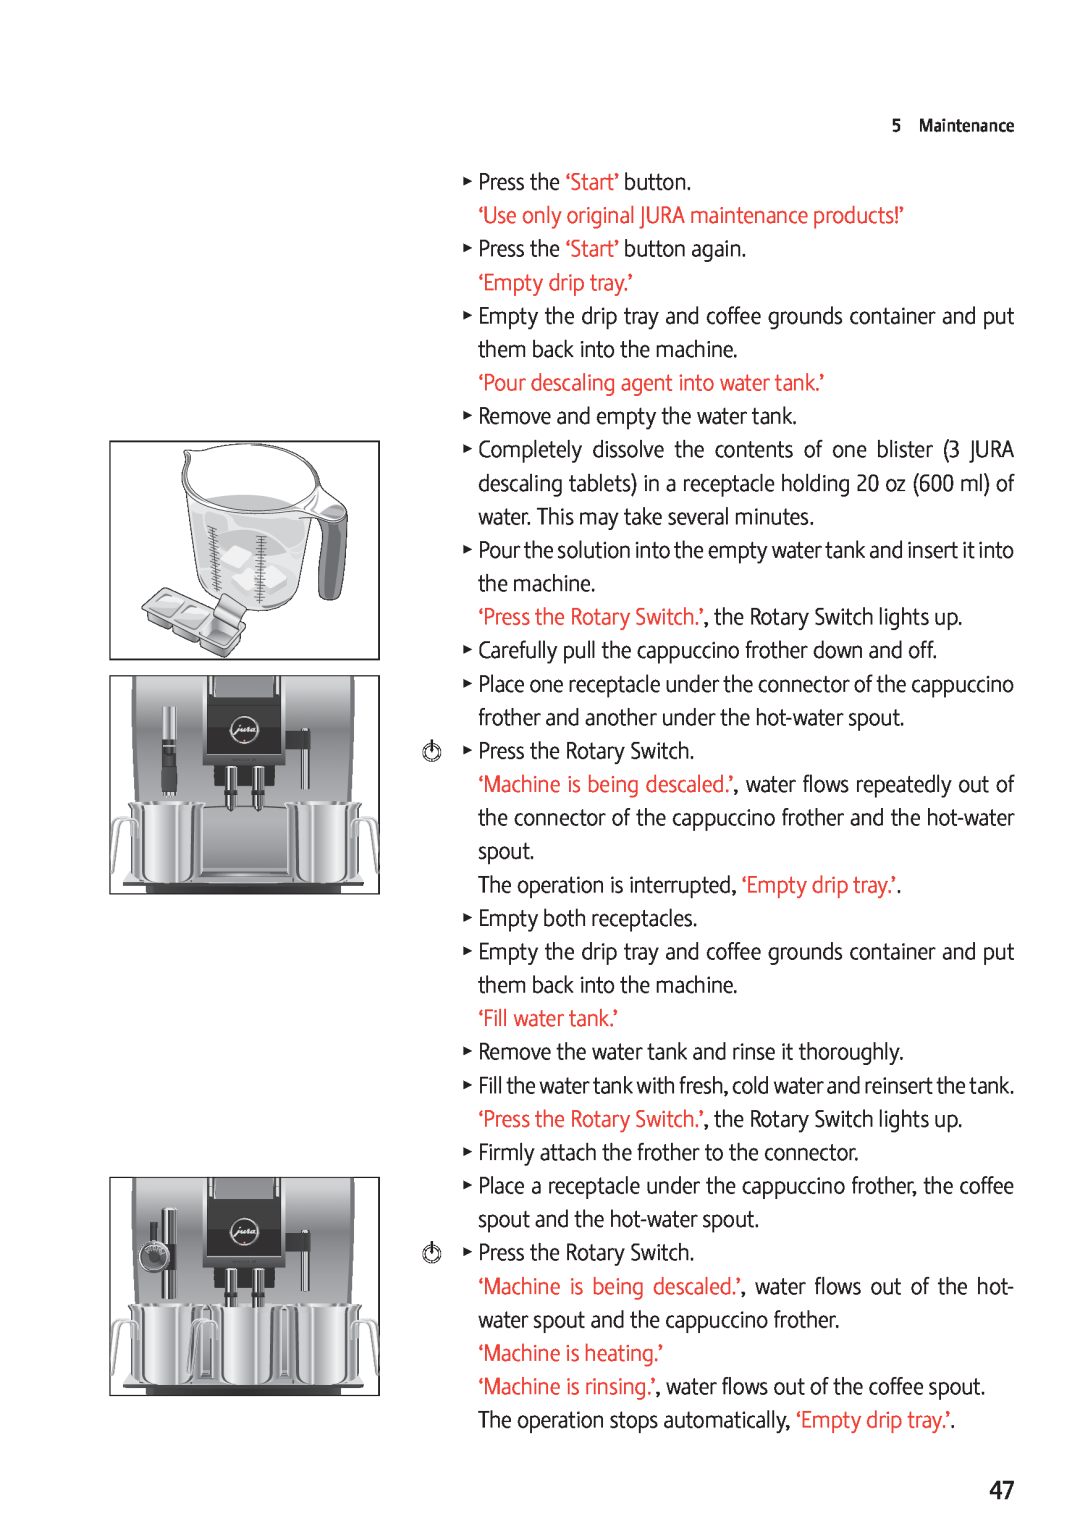 Jura Capresso Z9 manual ‘Empty drip tray.’, ‘Fill water tank.’, TPress the ‘Start’ button, ‘Machine is heating.’ 